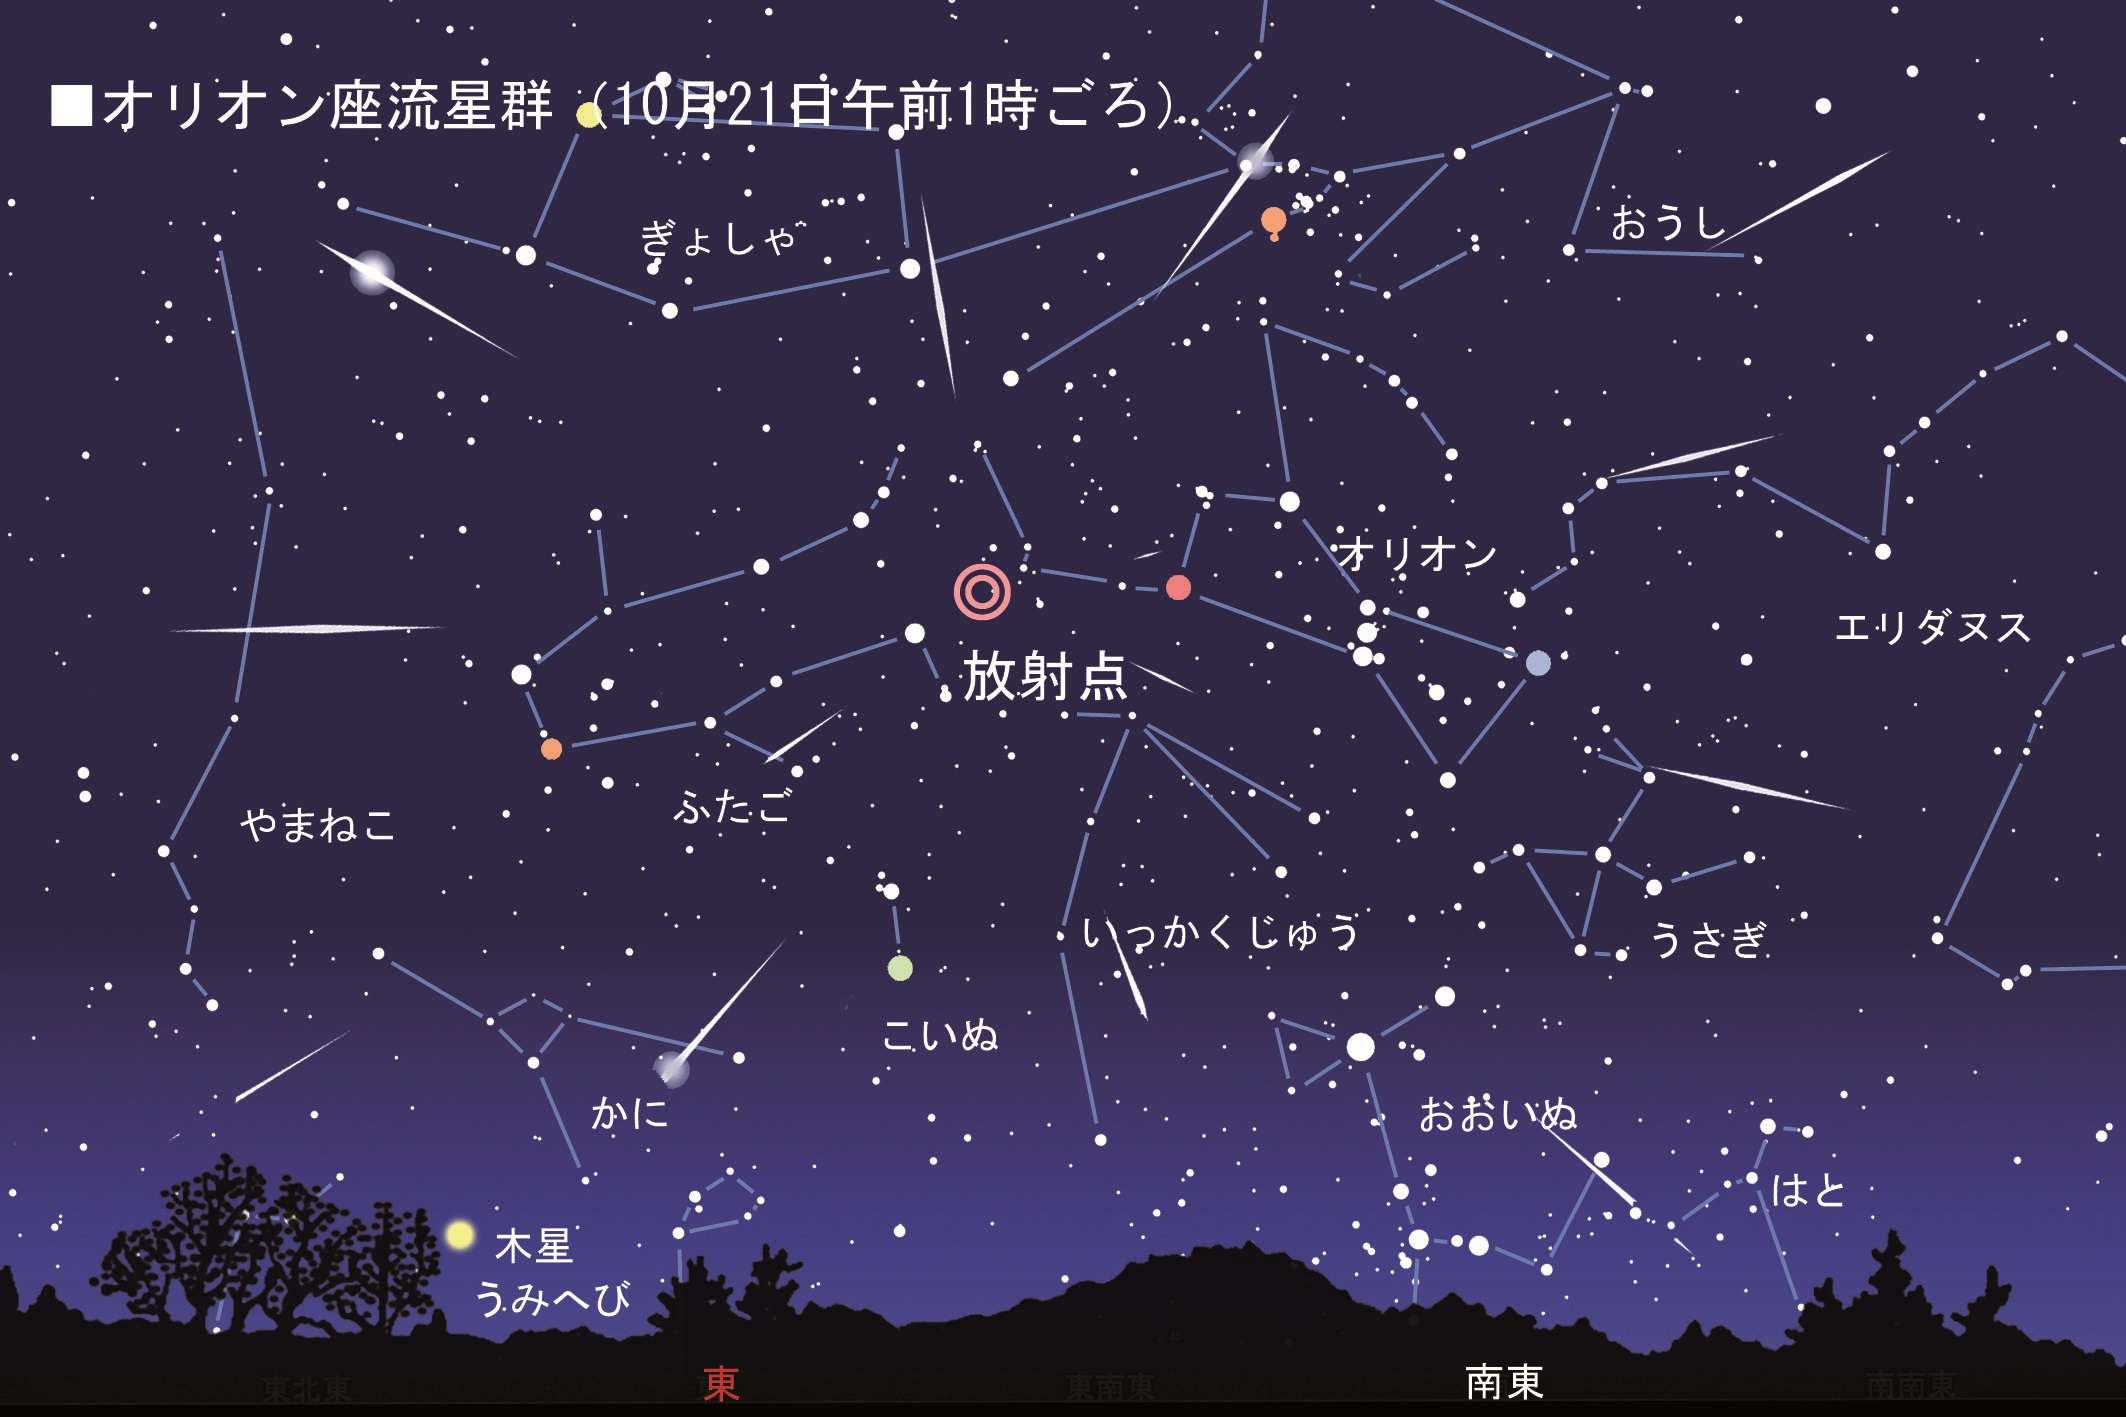 天体ショー再び 10 21オリオン座流星群がピークに 達人に訊け 中日新聞web